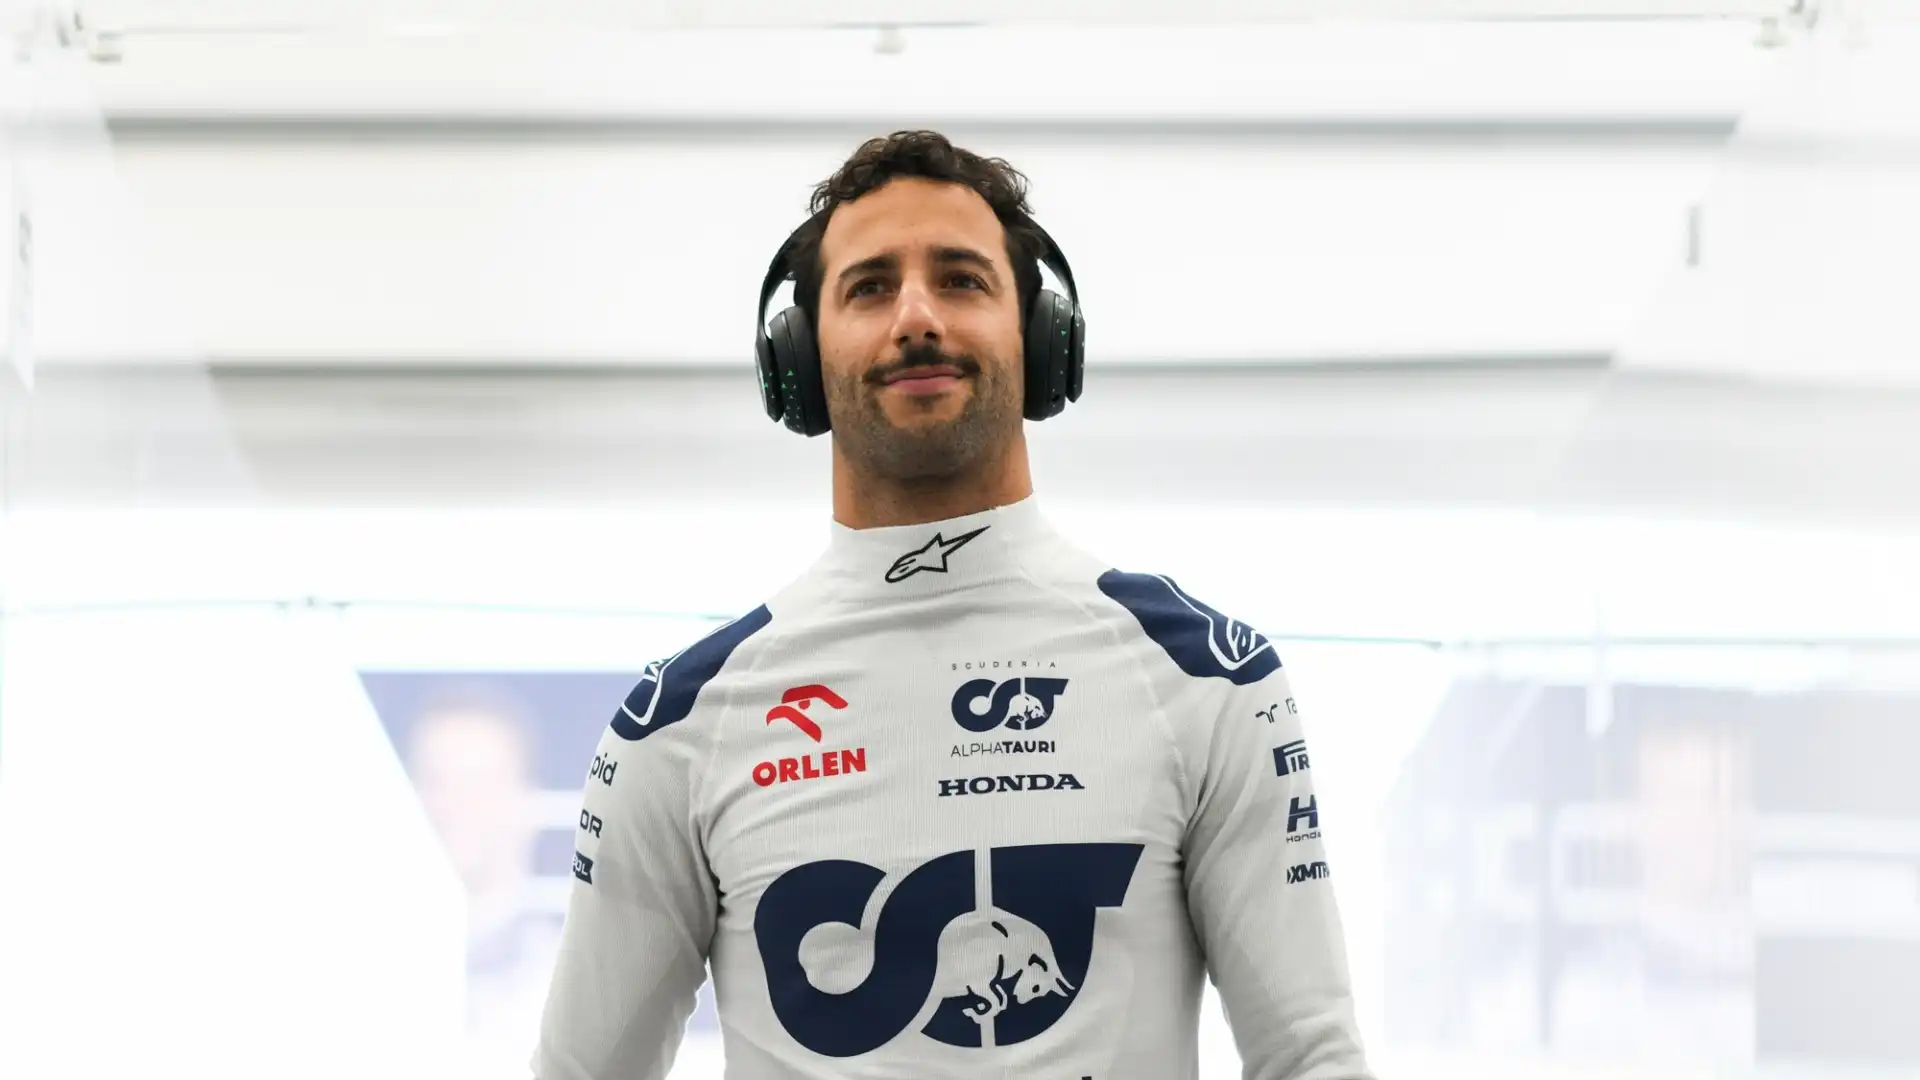 Ricciardo ha chiuso fuori dai primi 10 in Bahrain, in Arabia Saudita e in Australia